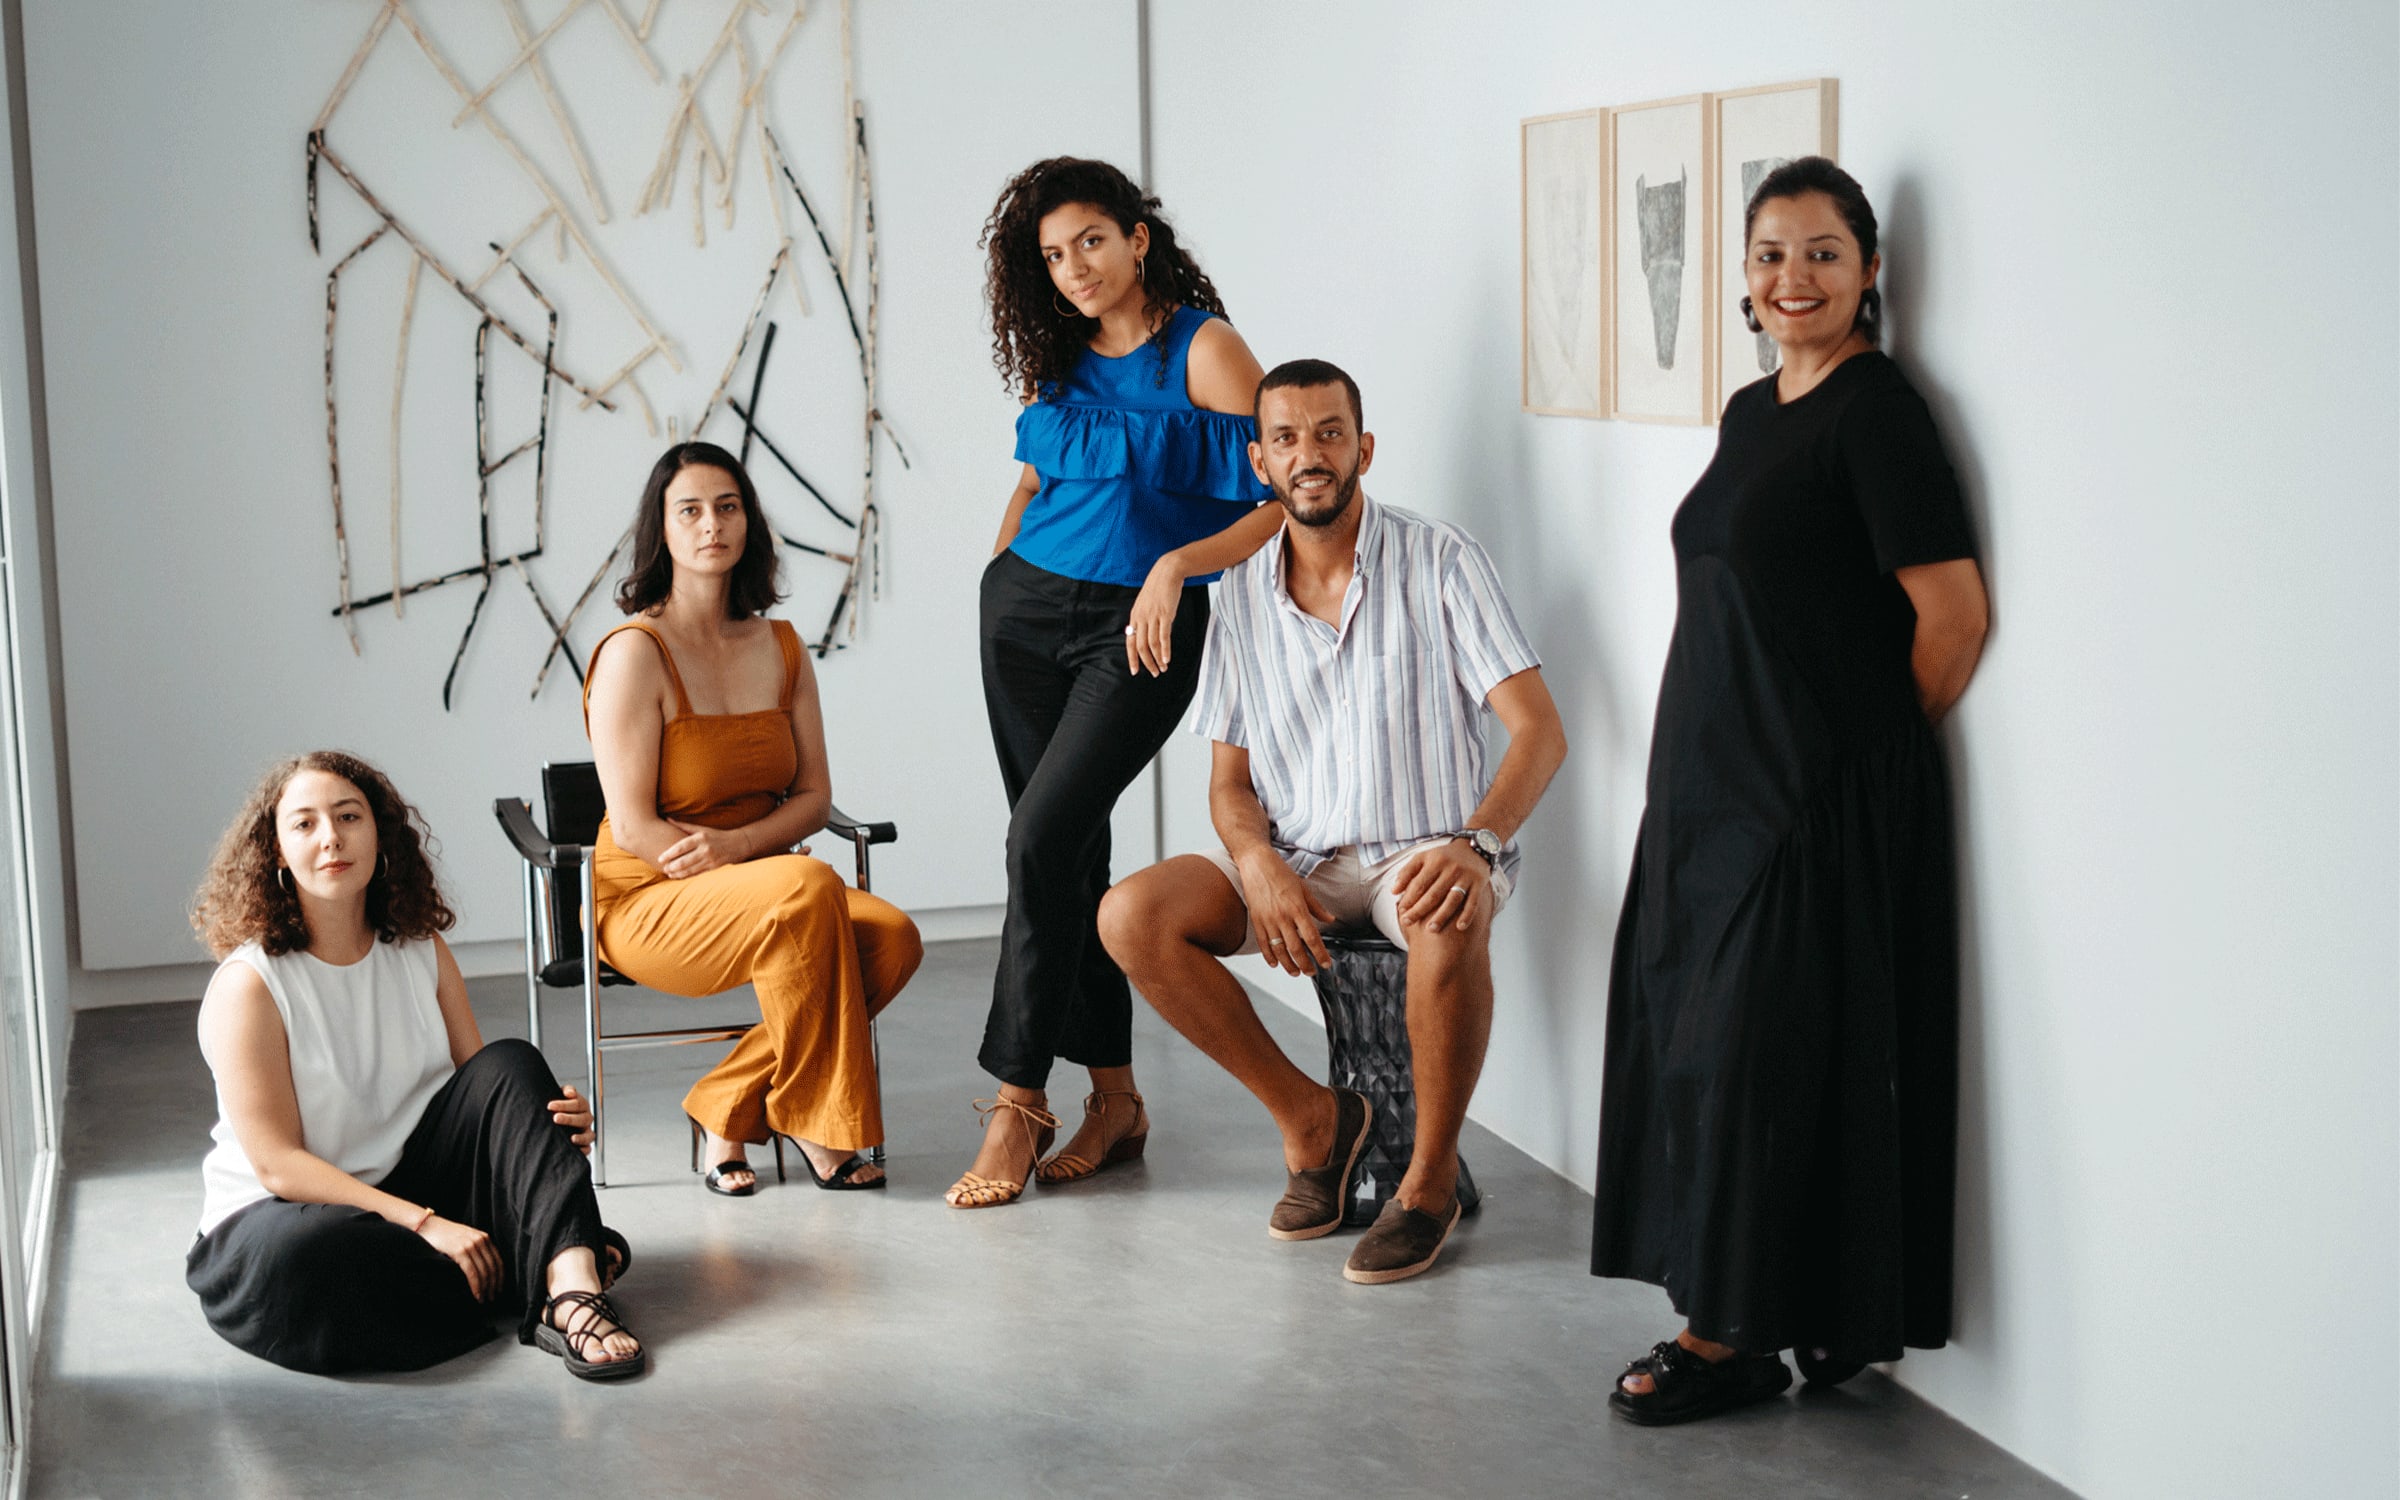 De gauche à droite : Salma, Insaf, Rania Hentati, Haythem, Selma Feriani. Avec l'aimable autorisation de Paul Mesnager et de Selma Feriani Gallery.